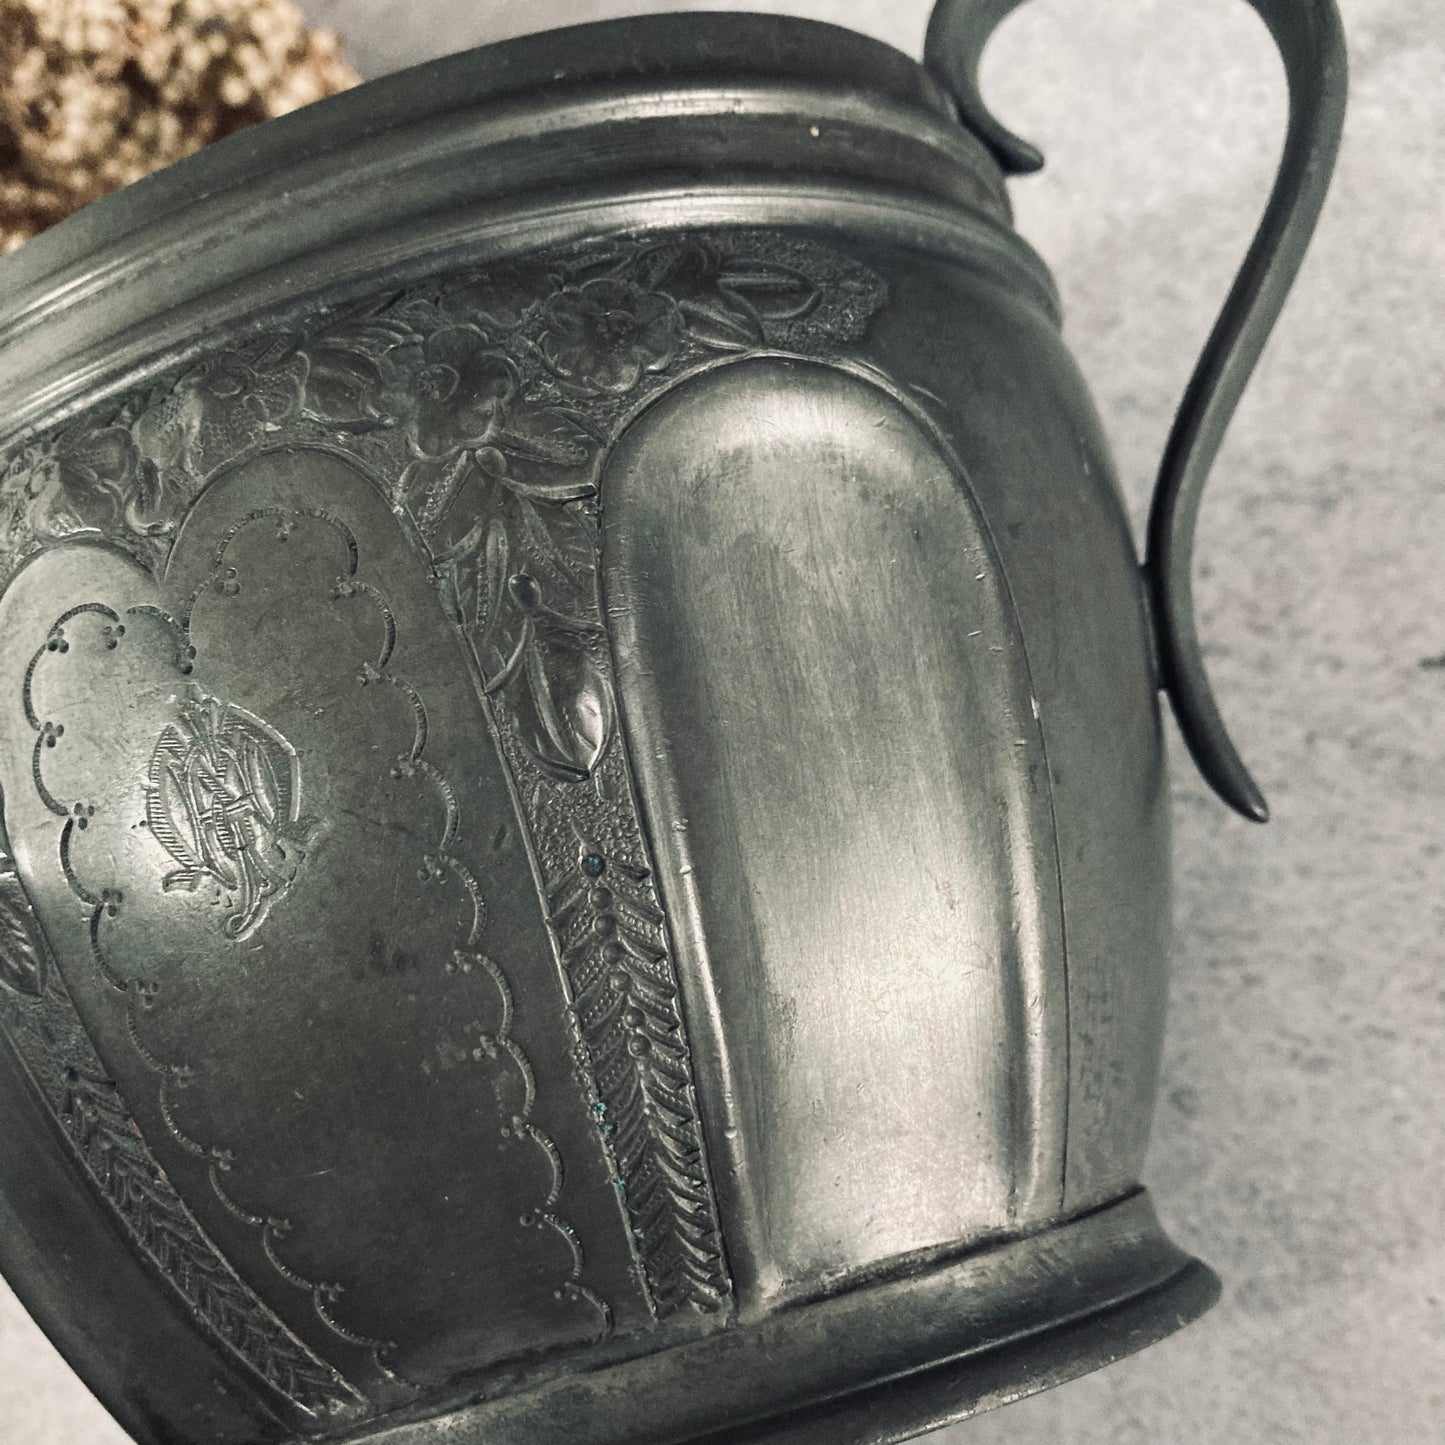 Antique English Pewter Engraved Sugar Bowls